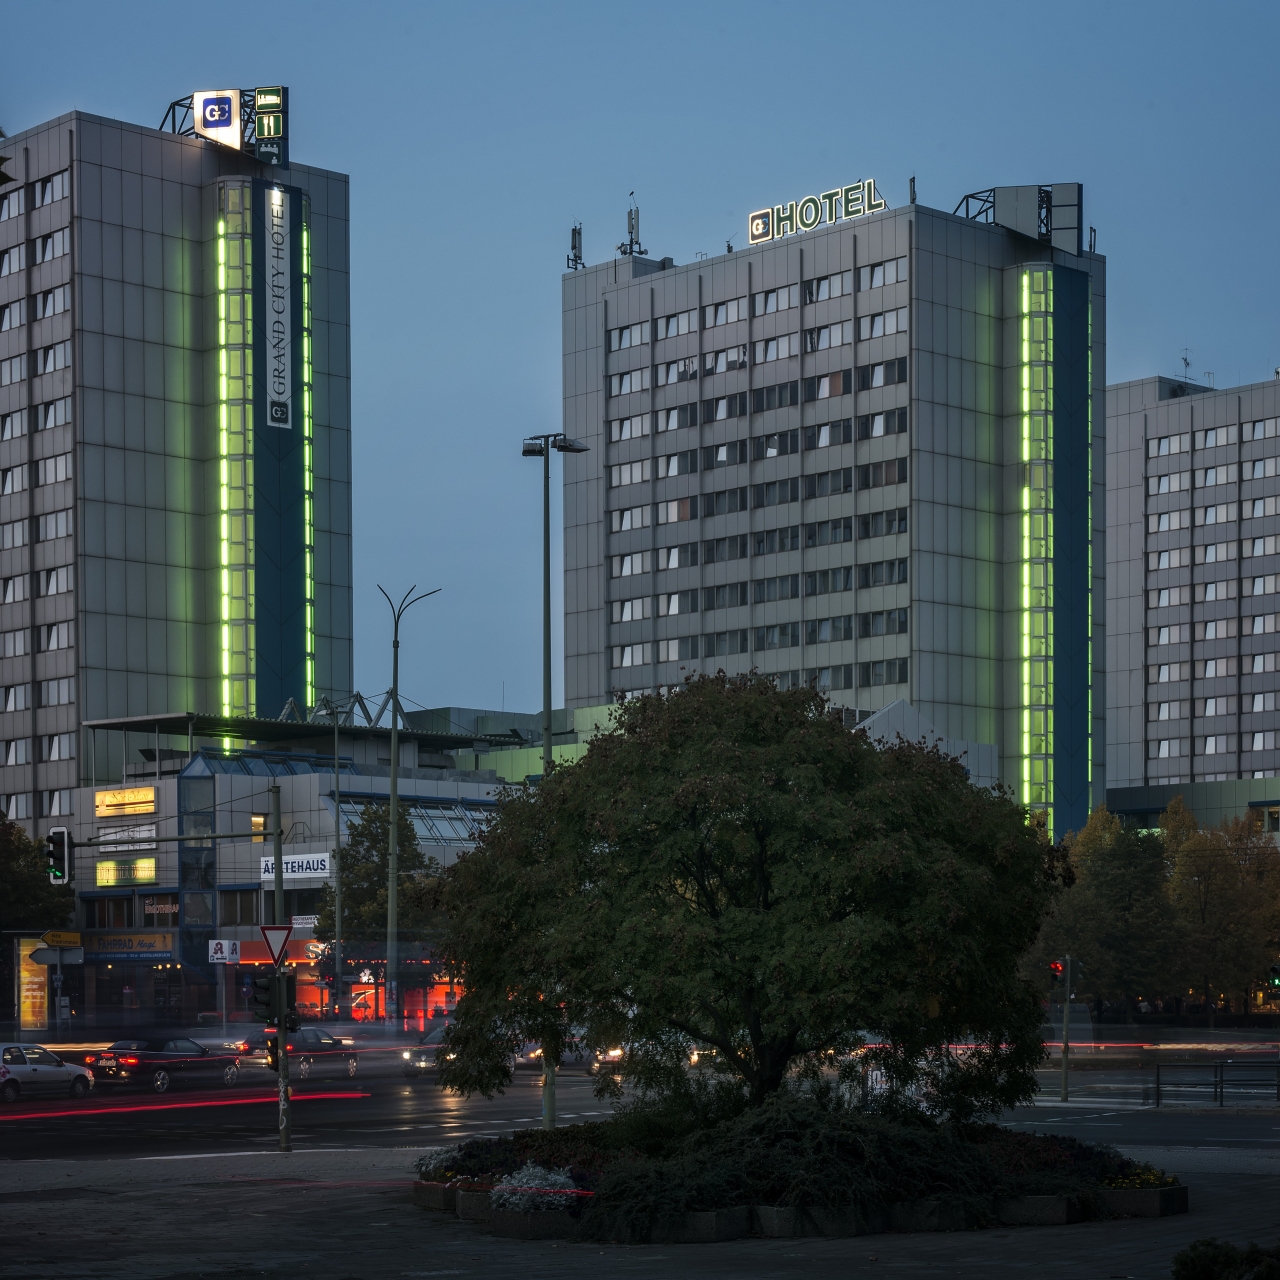 City Hotel Berlin East - 4 HRS star hotel in Berlin